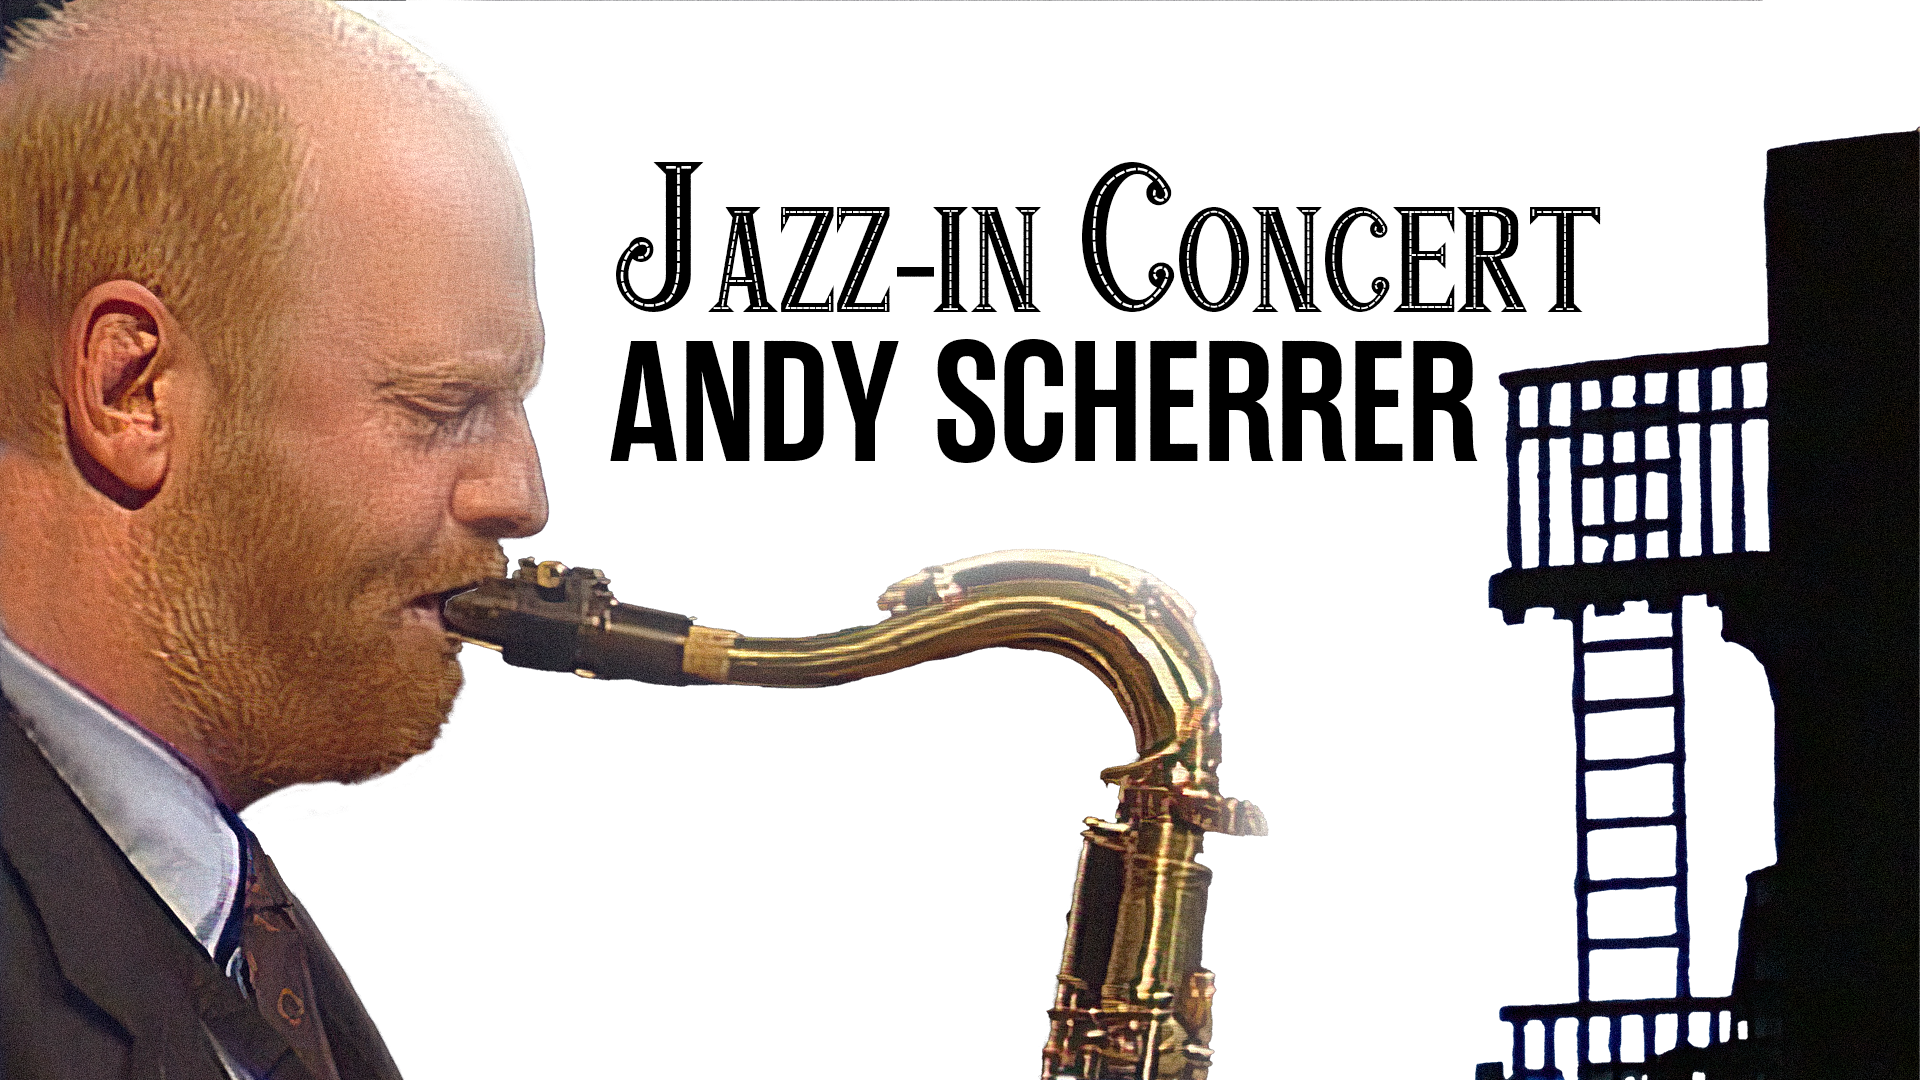 Jazz-in Concert : Andy Scherrer